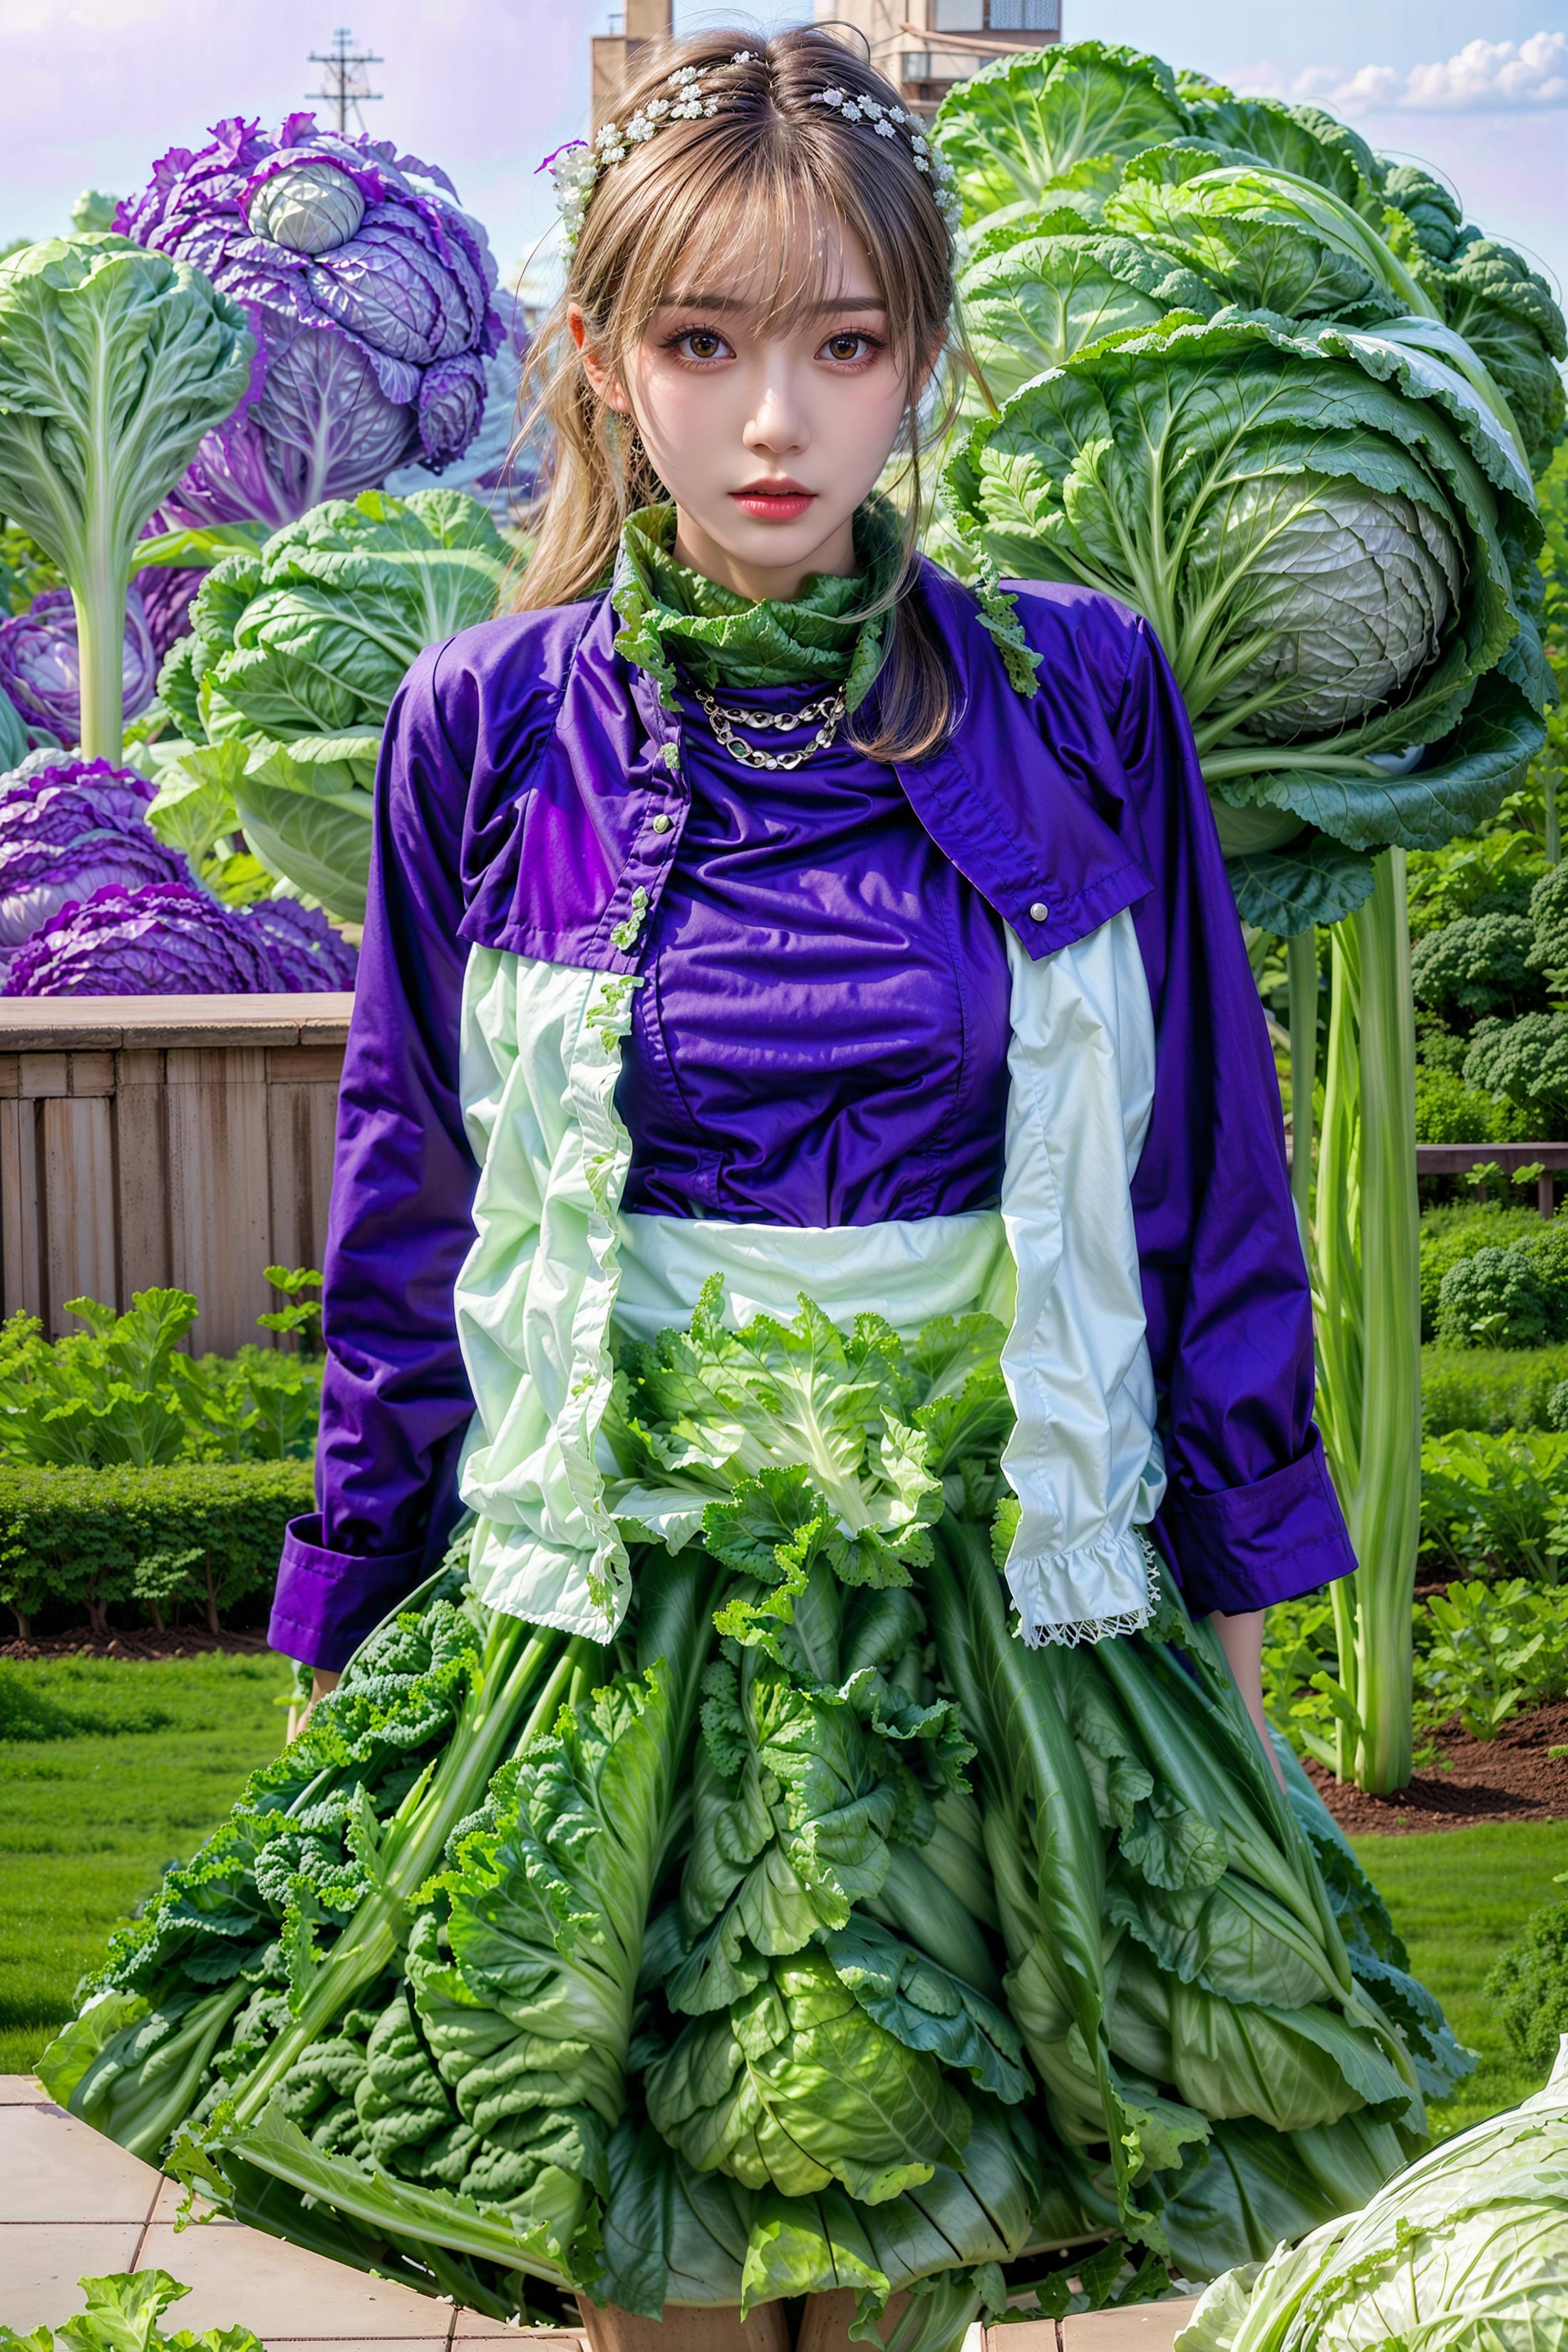 Fashion Cabbage Dress image by jaysdvn